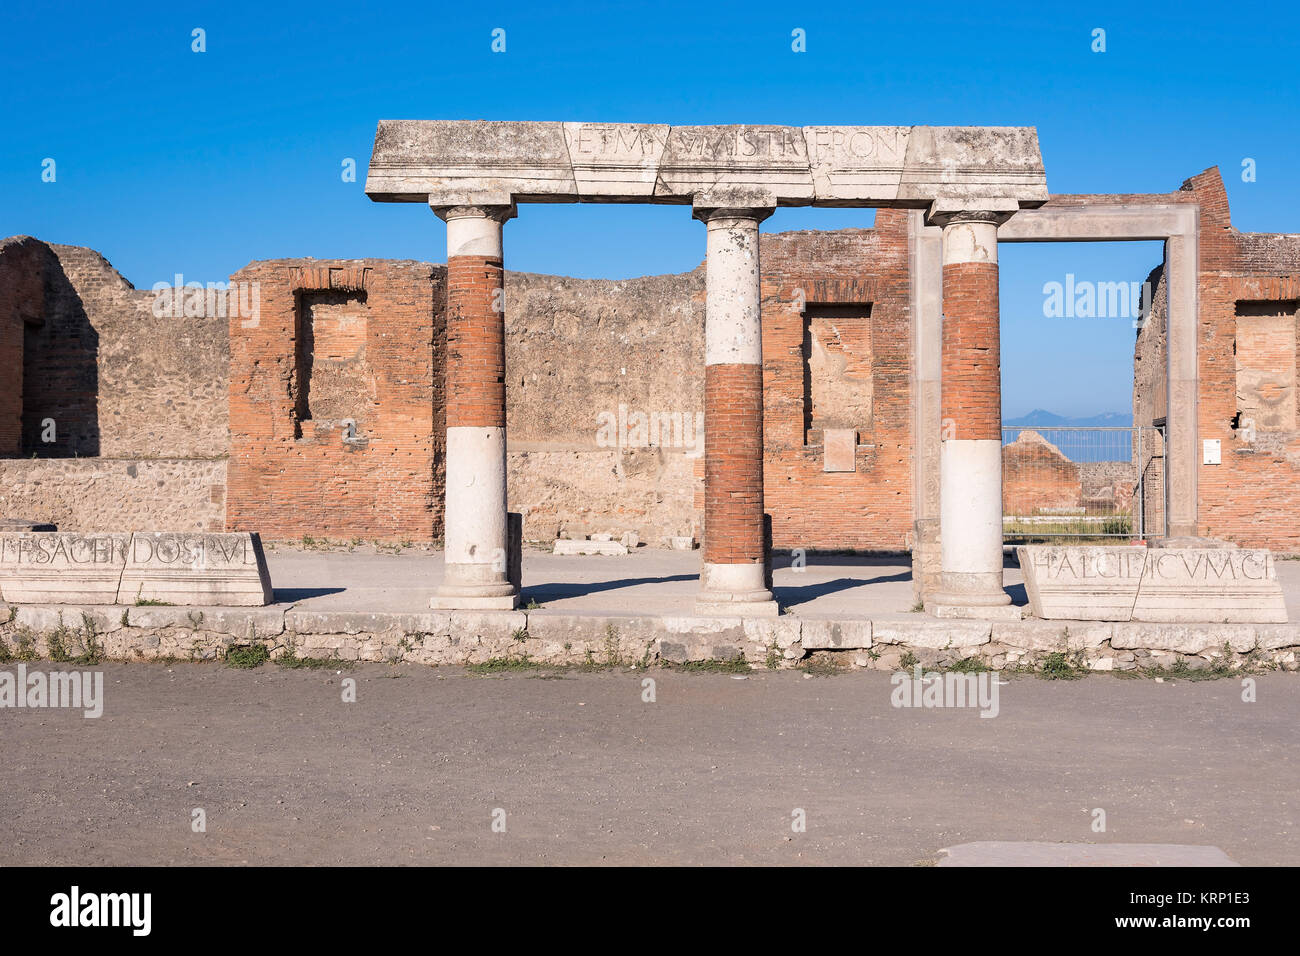 Ruines de Pompéi, l'ancienne ville romaine Banque D'Images